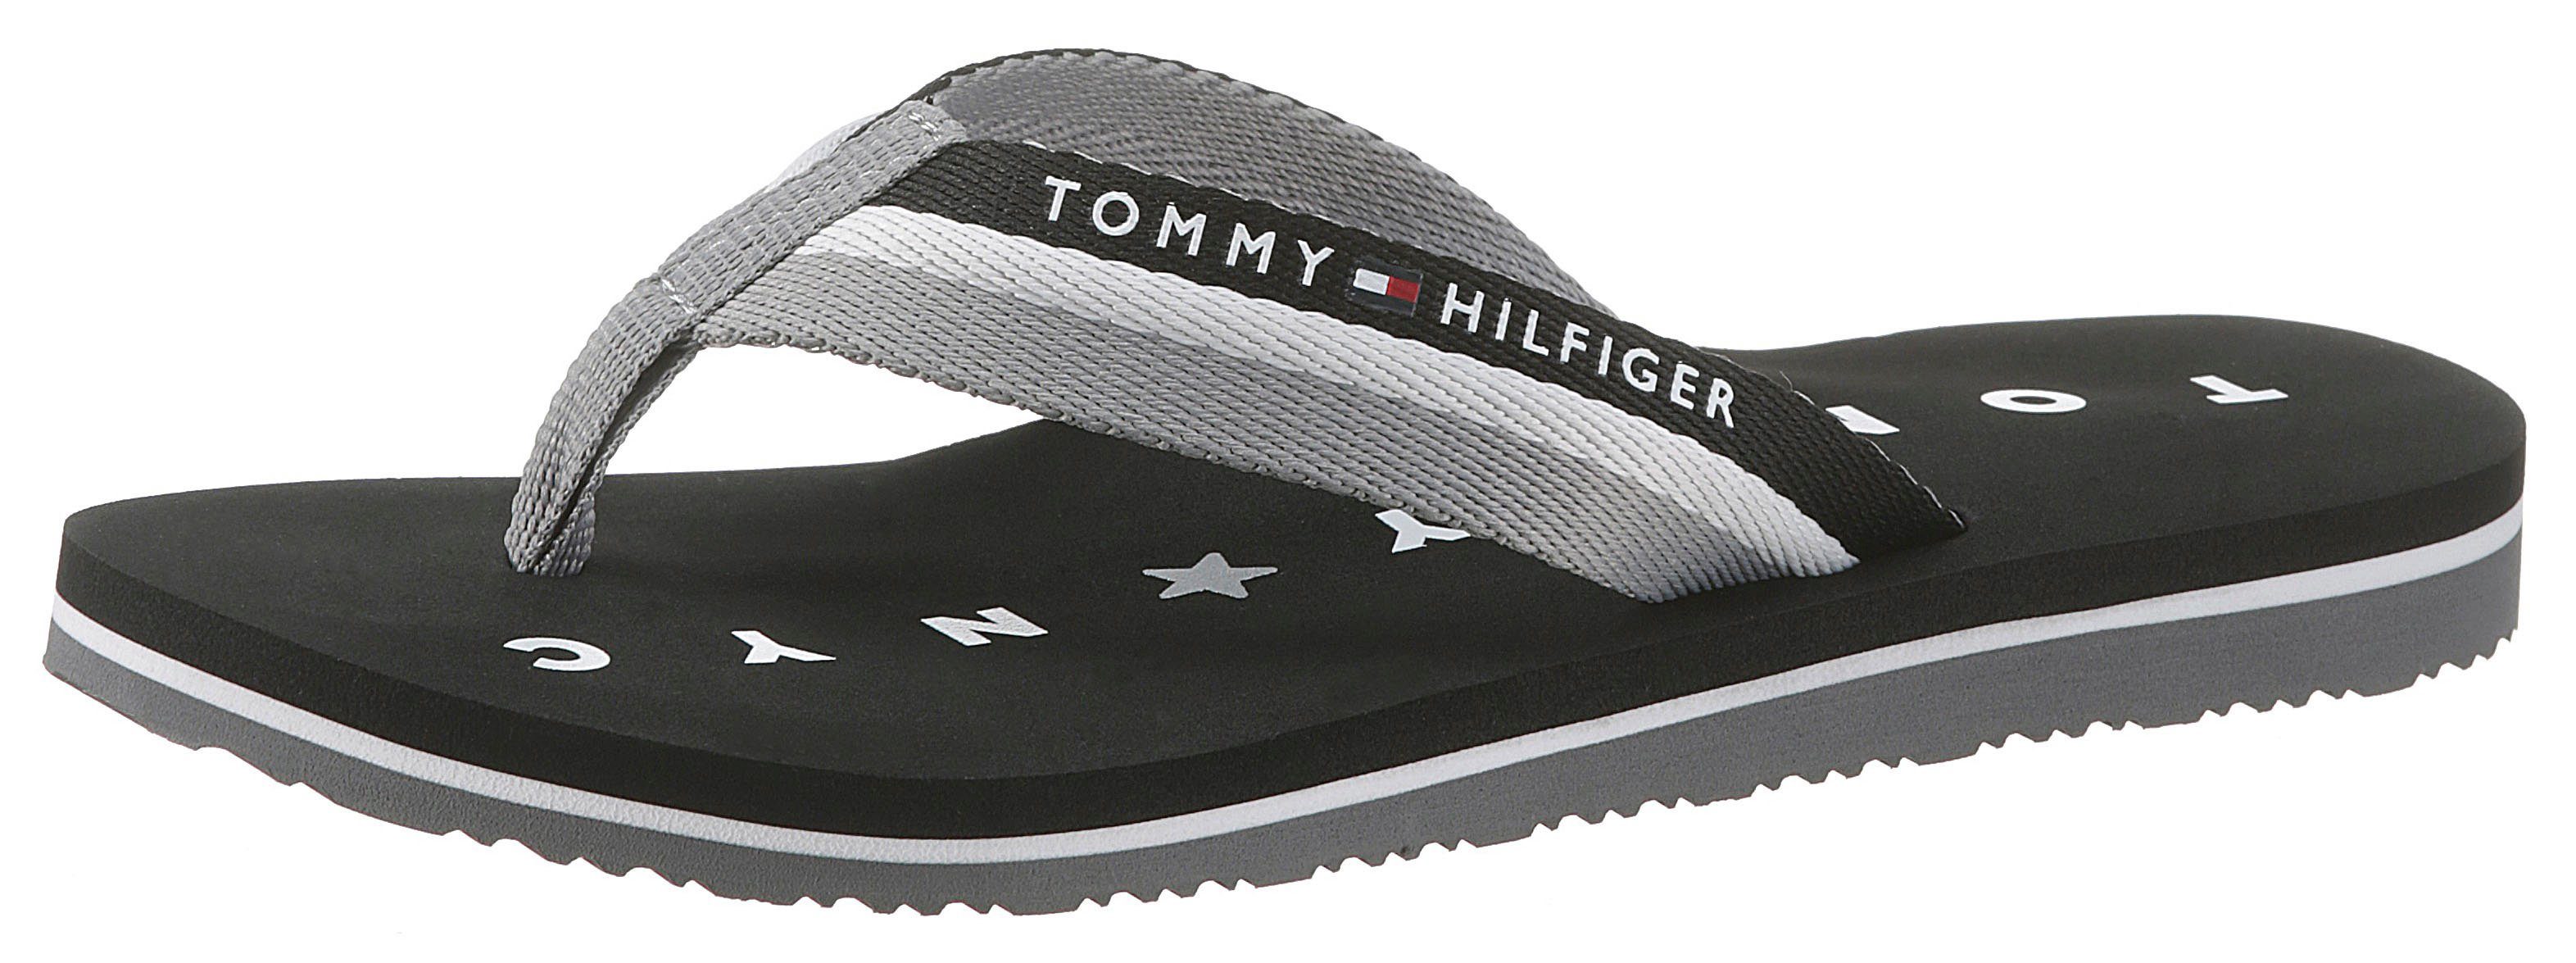 Tommy Hilfiger TOMMY LOVES NY BEACH SANDAL Zehentrenner mit Logo ausf der Laufsohle schwarz-weiß